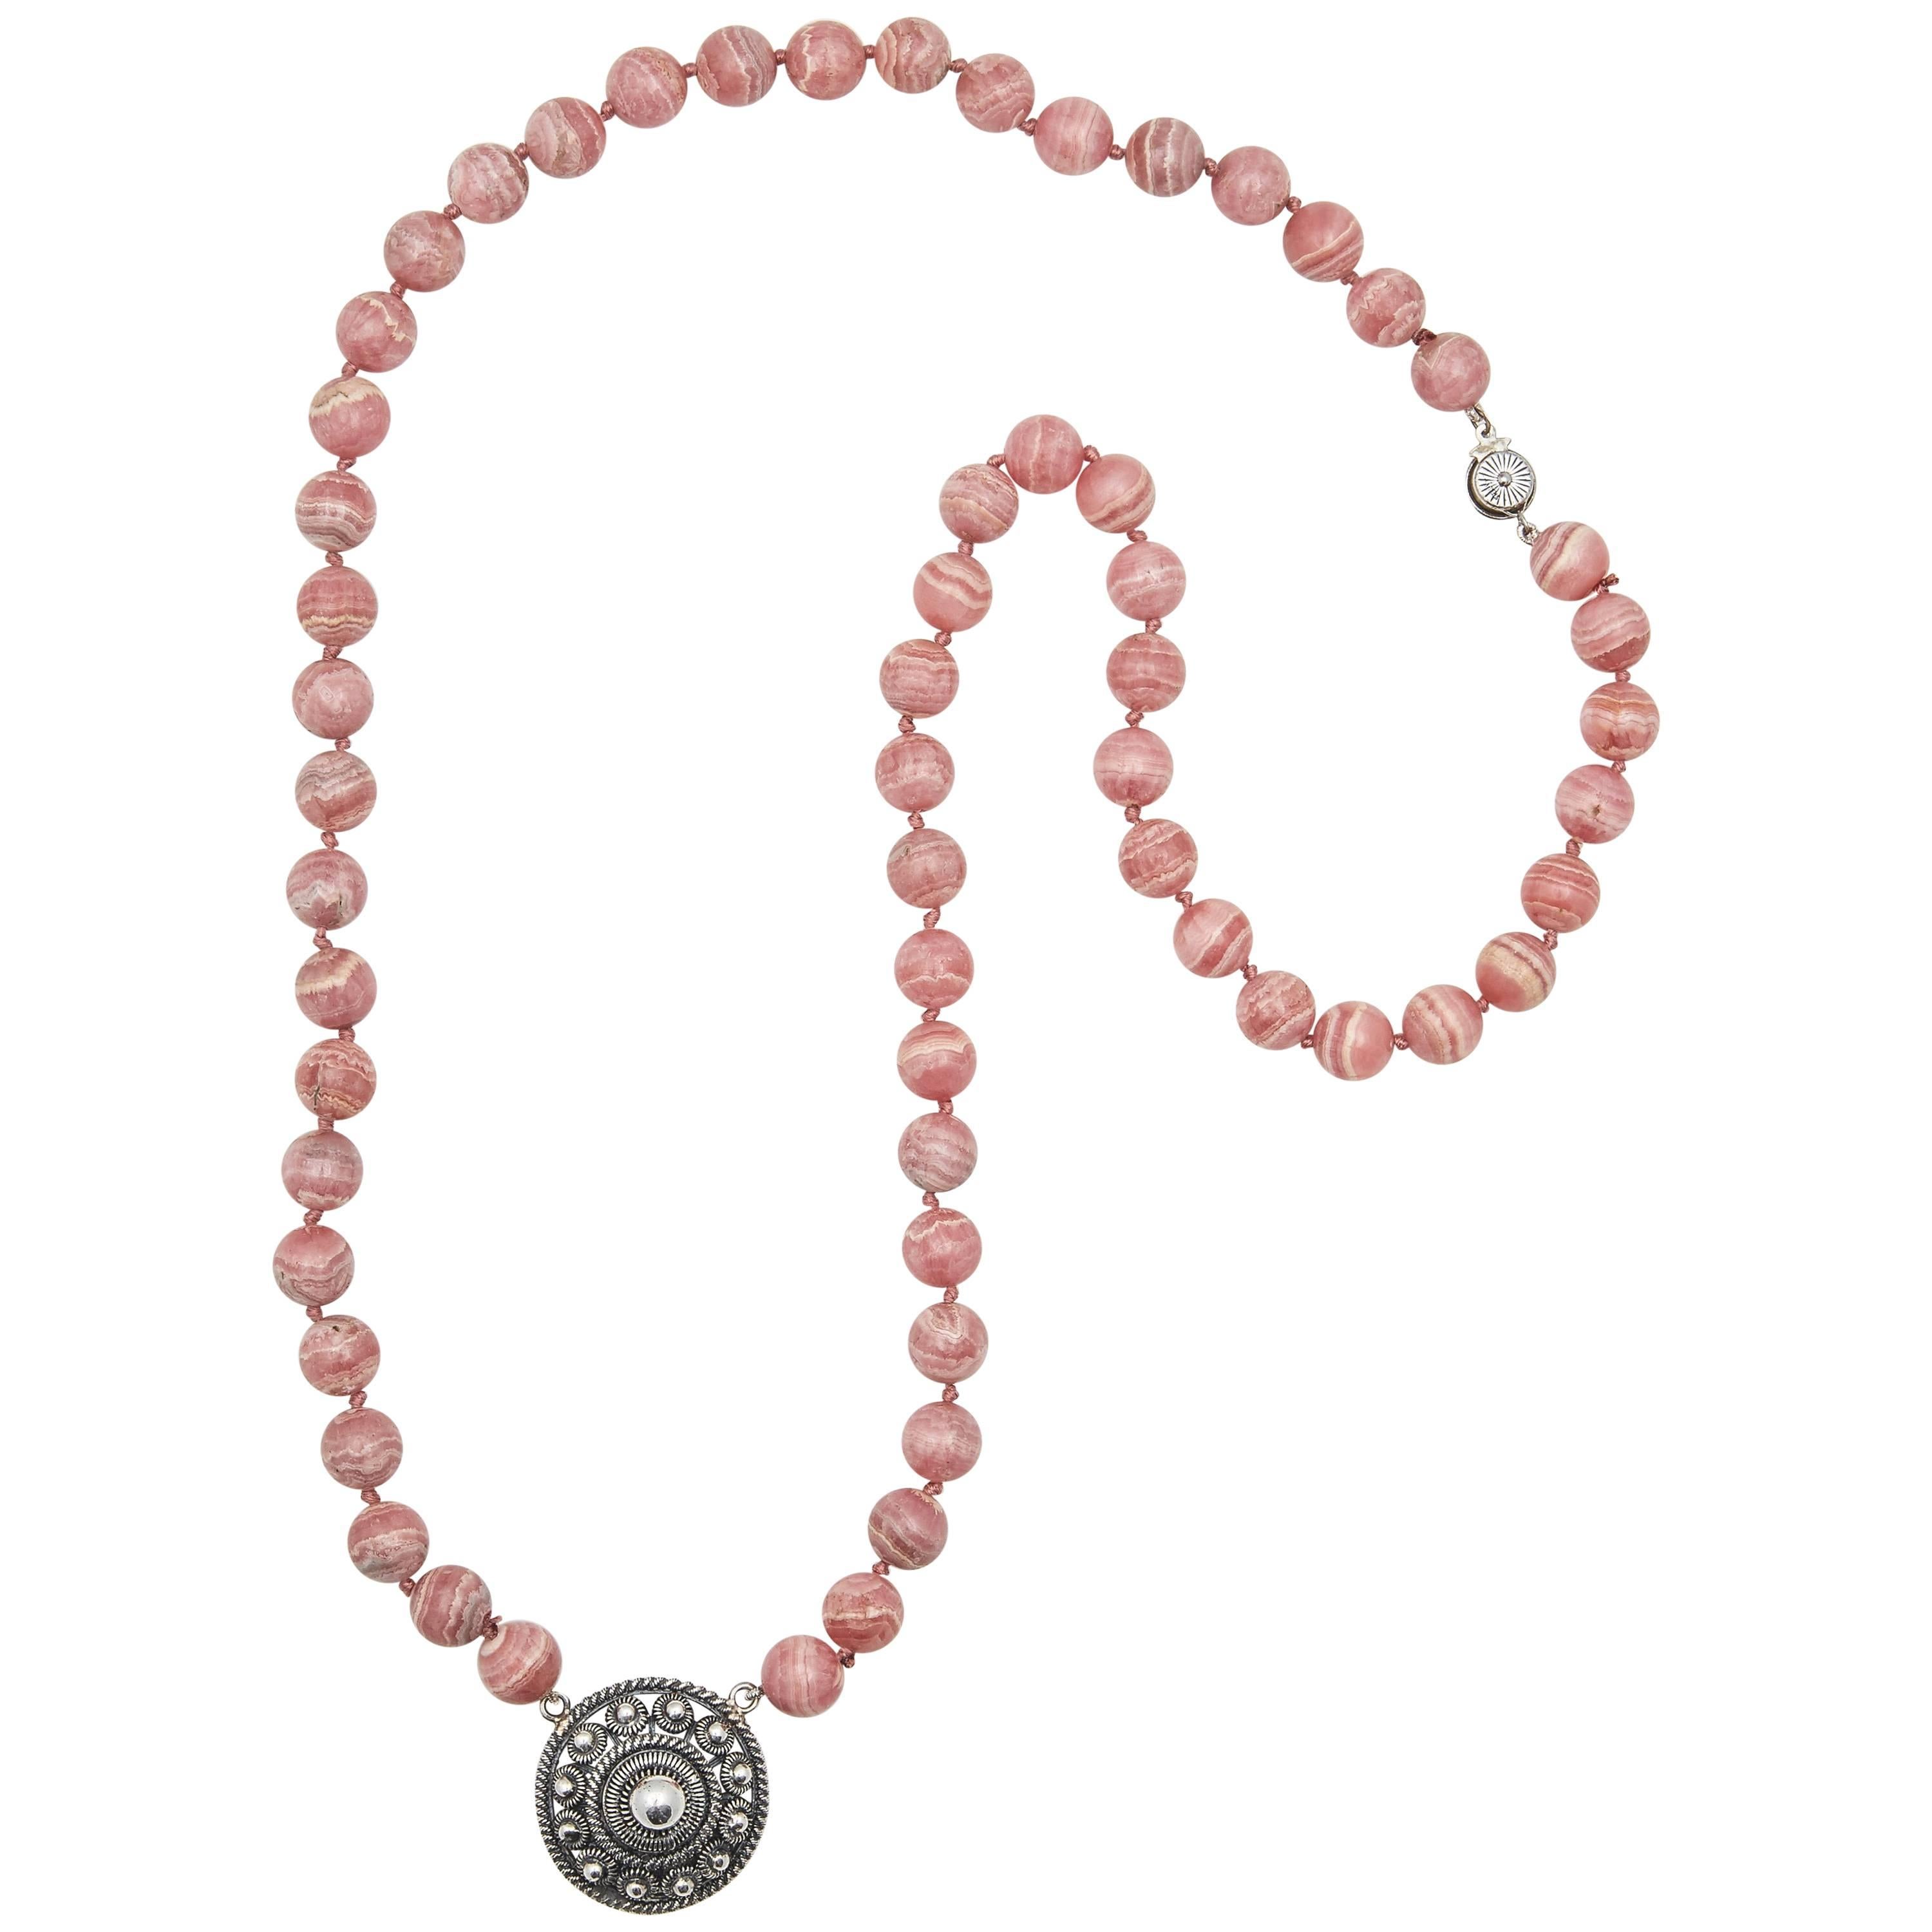 Collier de perles de rhodochrosite avec pendentif rondelle en argent, 20e siècle